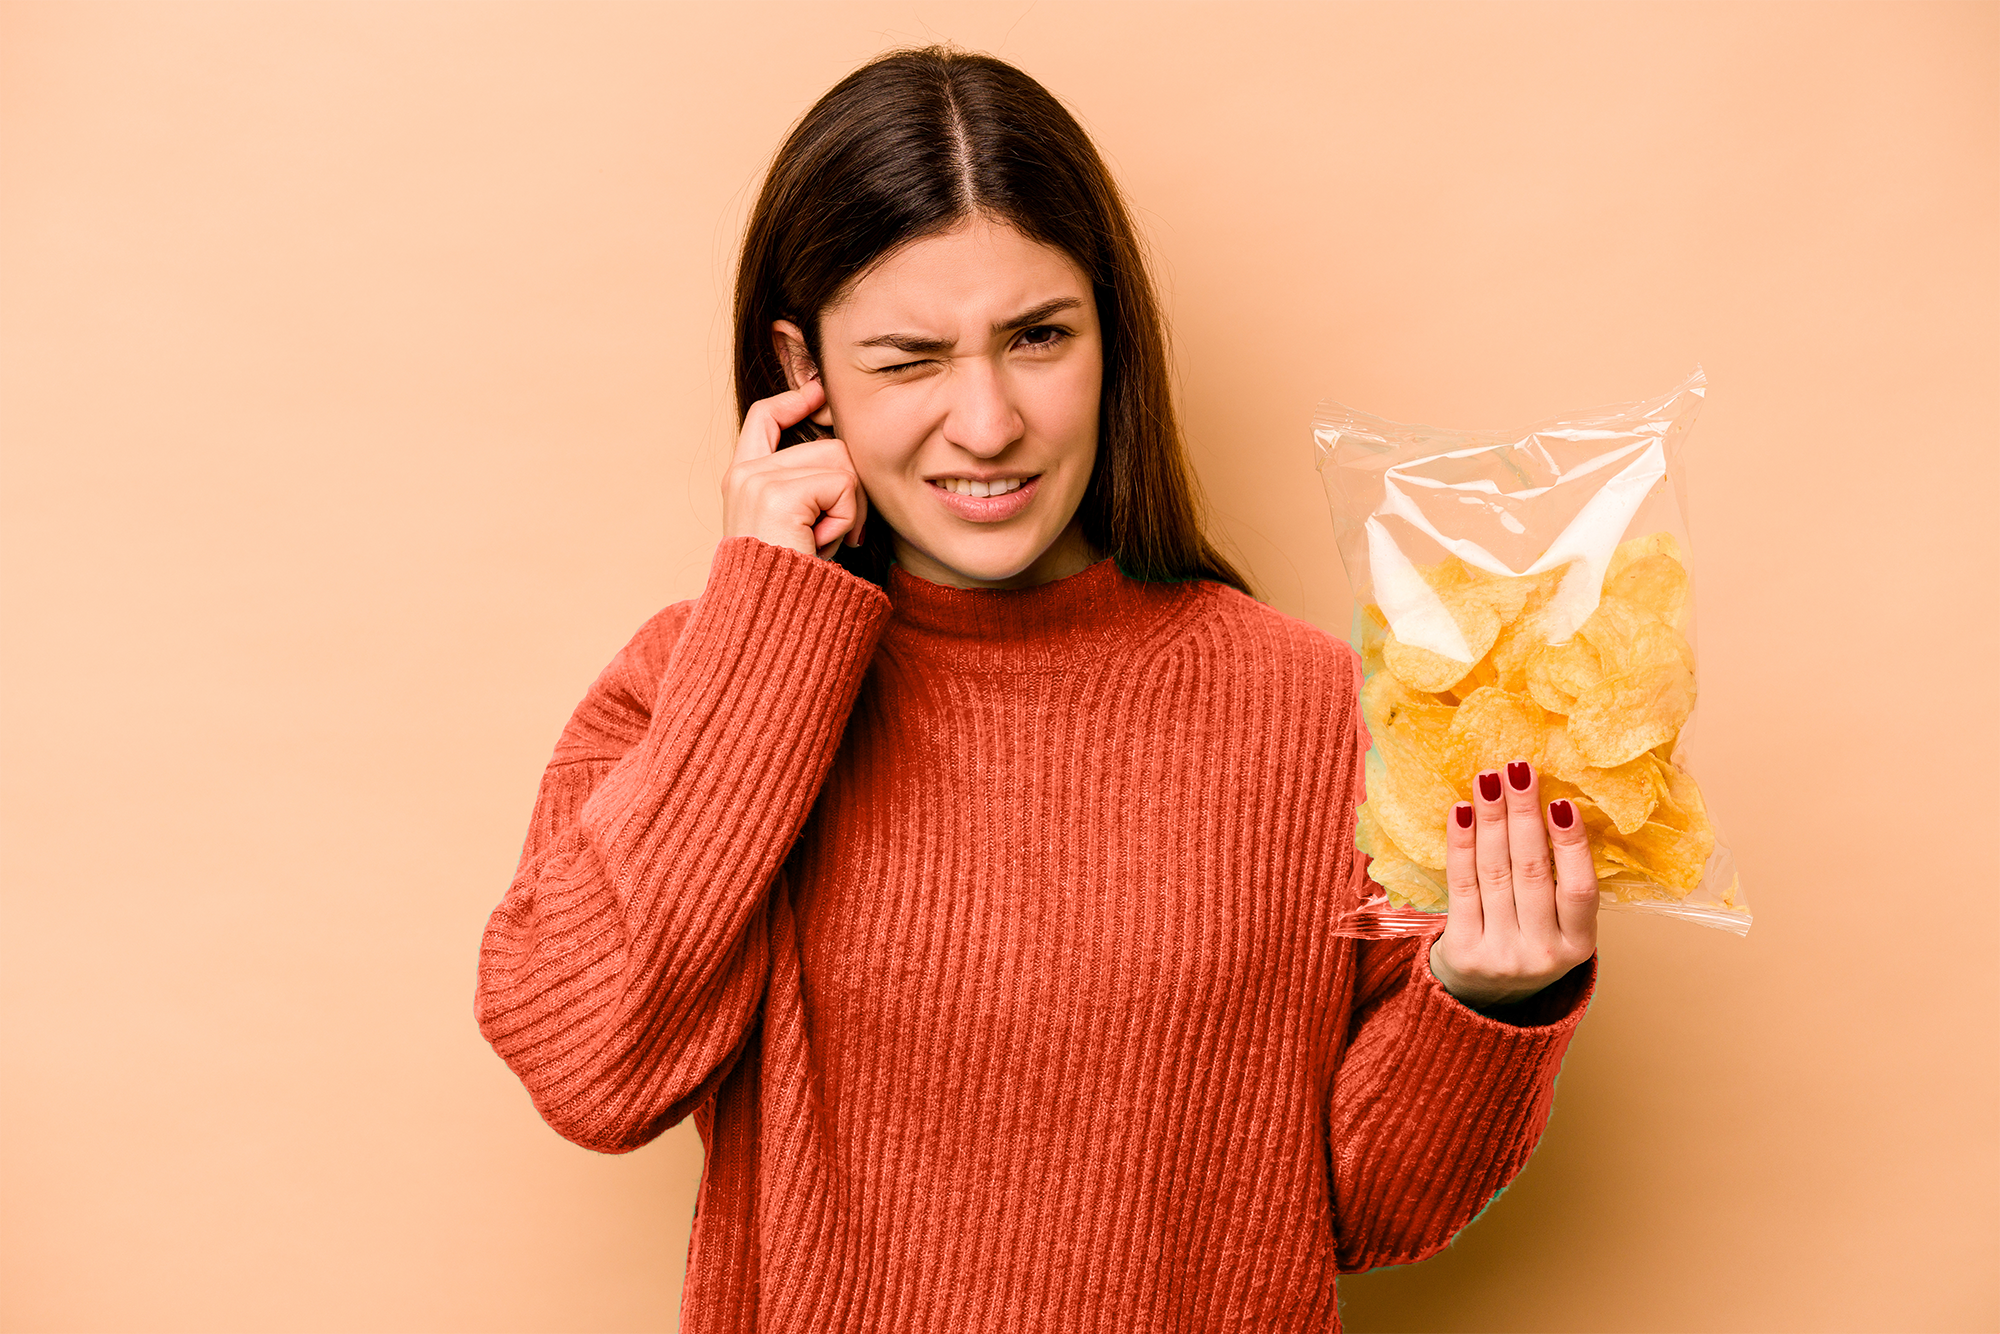 Une jeune femme se bouche une oreille d'une main et tient paquet de chips de l'autre. Son visage indique qu'elle est gênée par le bruit du sachet. © Asier, Adobe Stock   